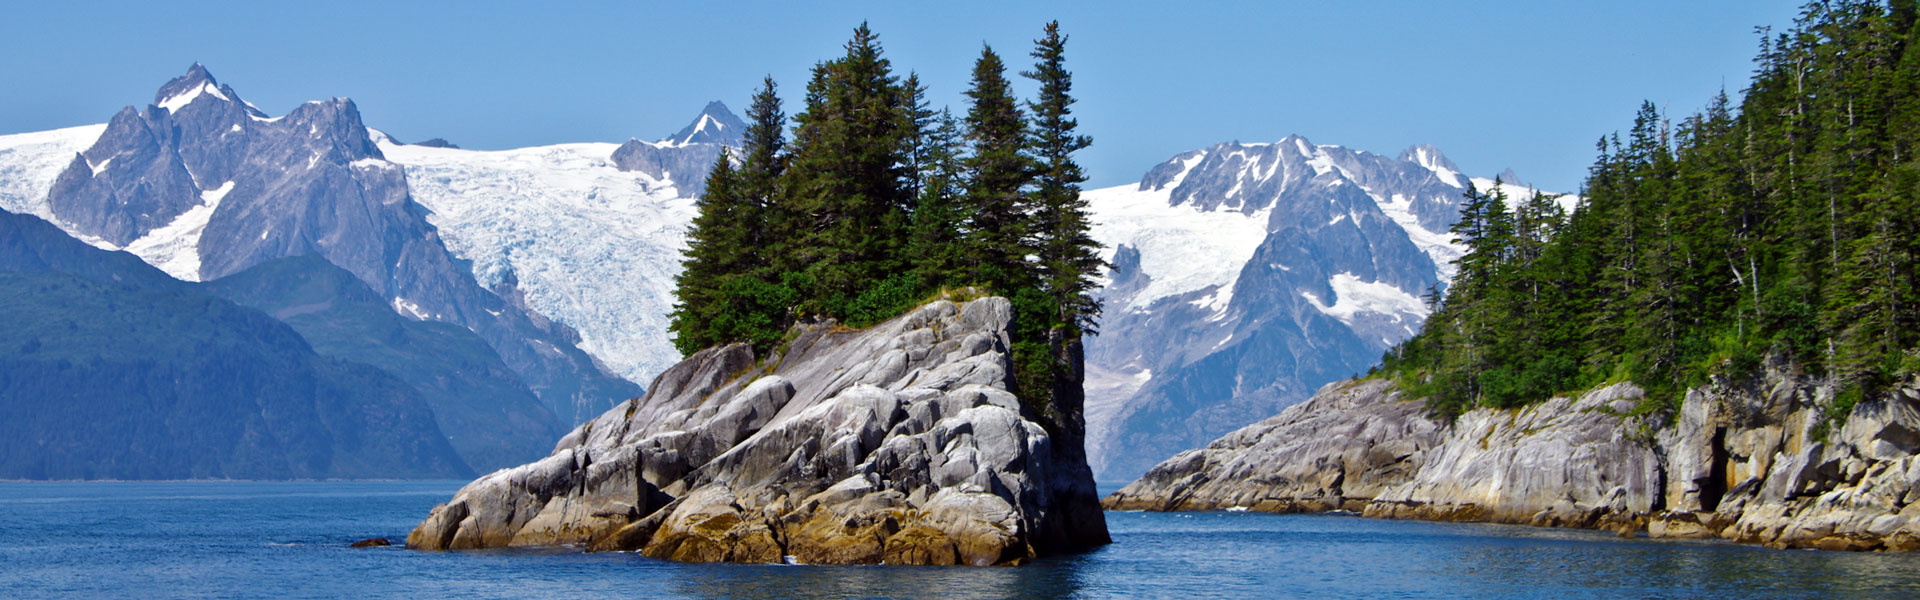 Kenai Fjords National Park Alaska | Cruises & Tours